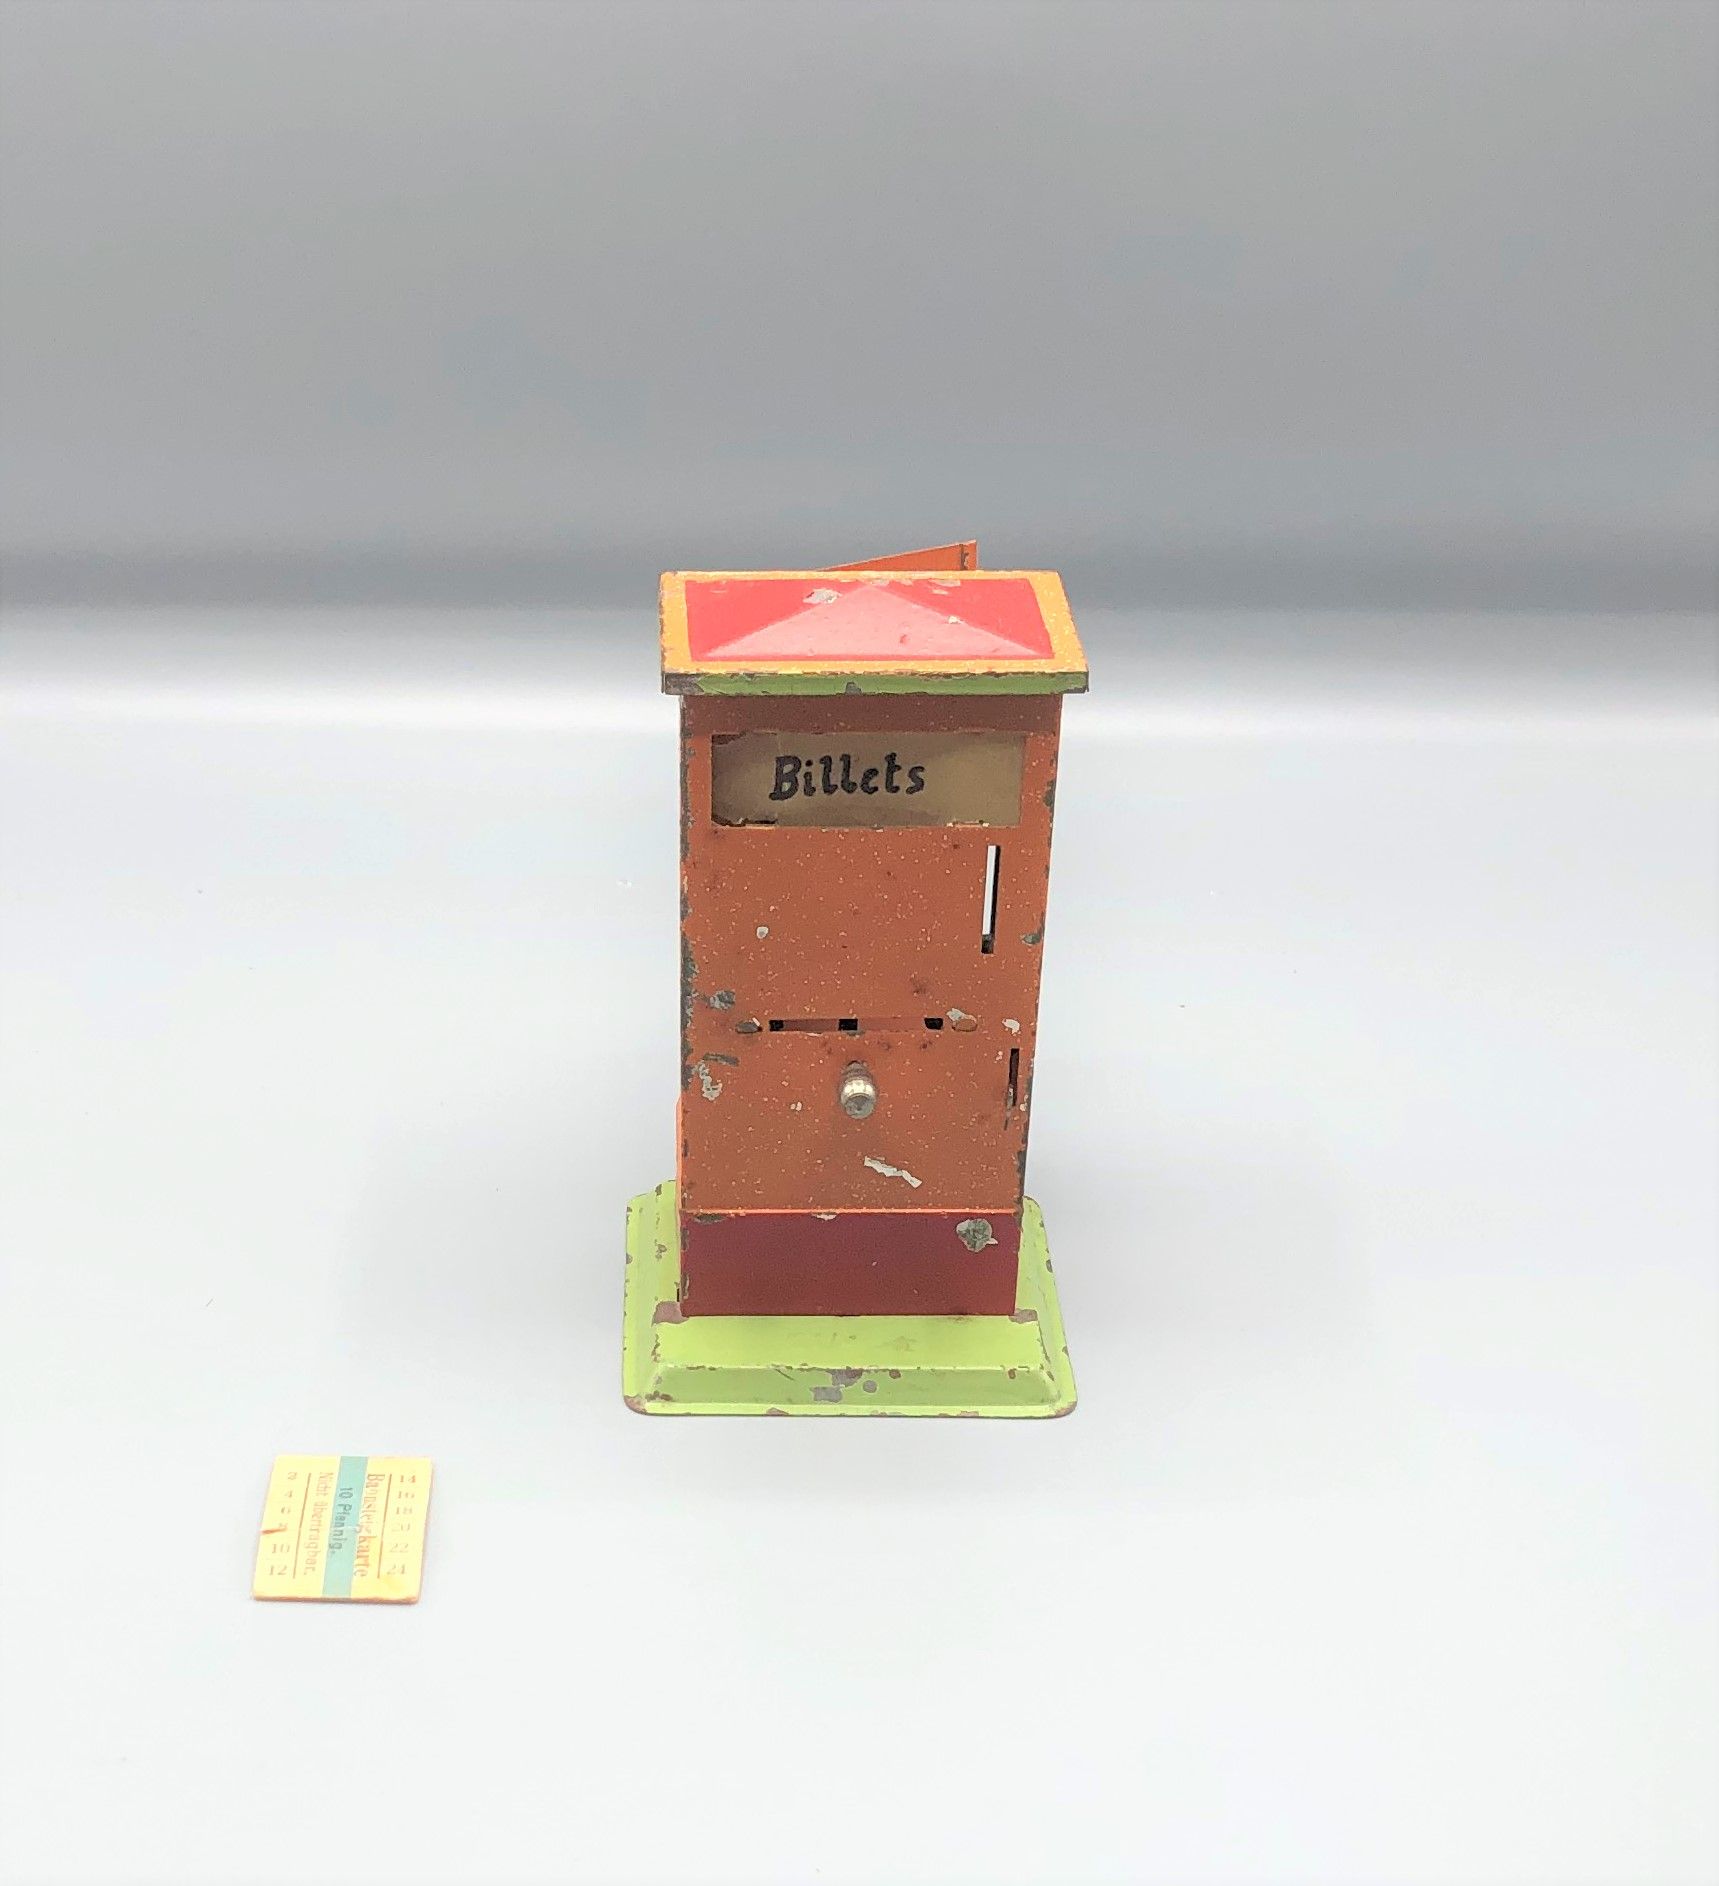 Null 杂项 -0-

德国制造的平台出票机

1950



使用条件

更多信息请联系该研究。